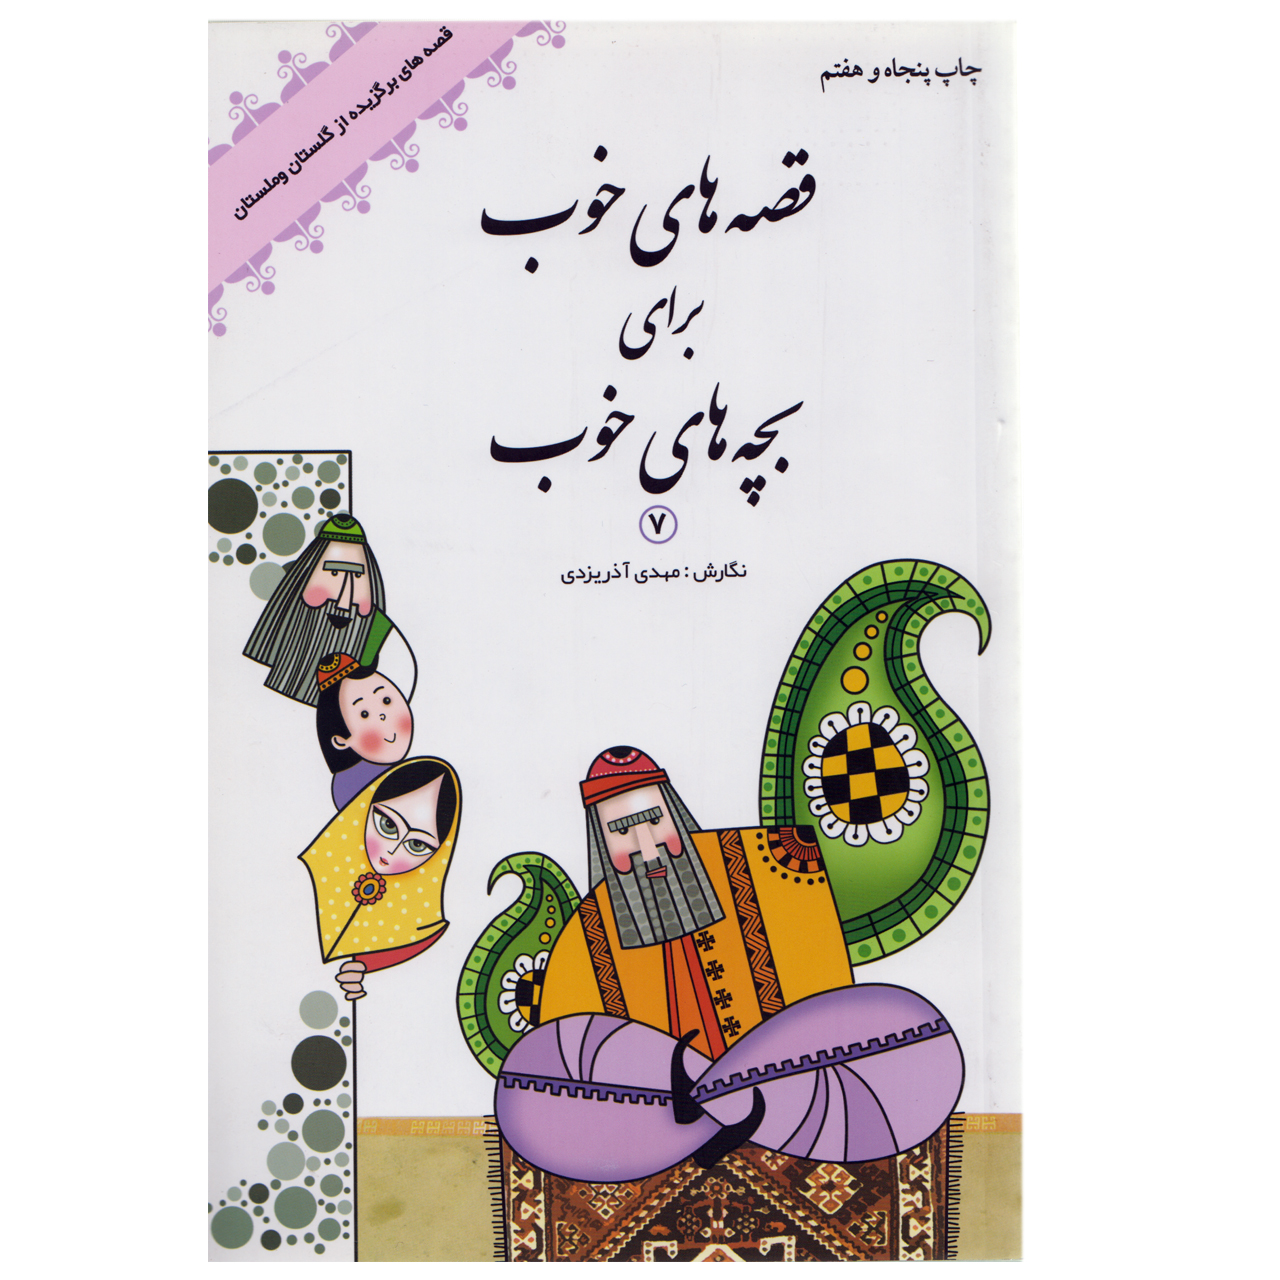 كتاب قصه هاي خوب براي بچه هاي خوب7 قصه هاي گلستان و ملستان اثر مهدي آذريزدي